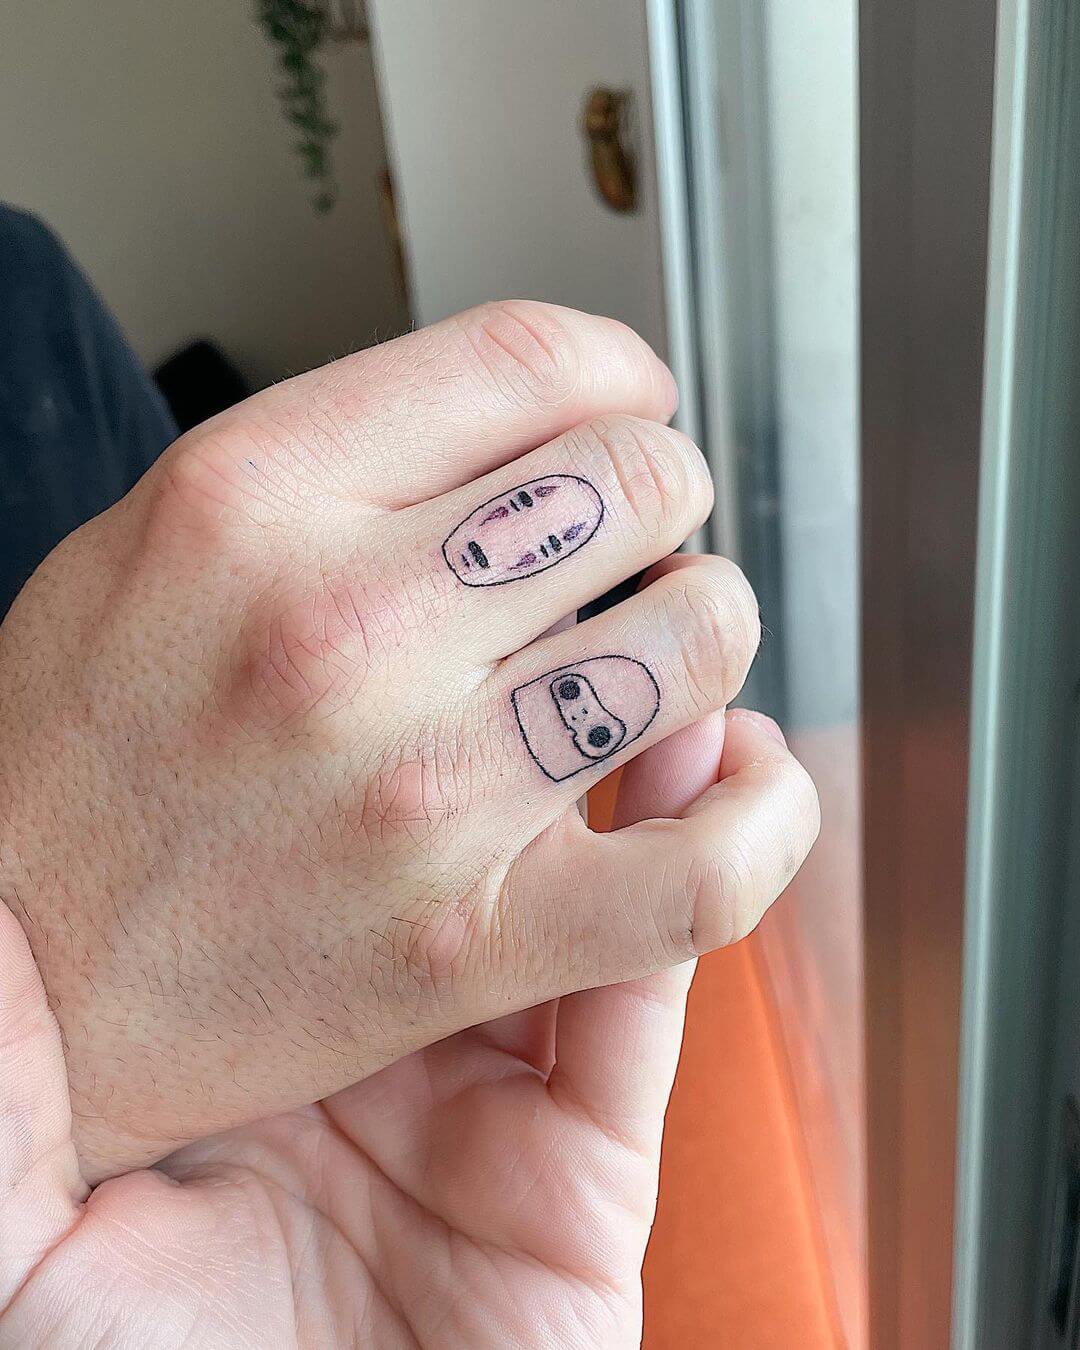 Four tiny finger tattoos for Izzy 💀 | Instagram